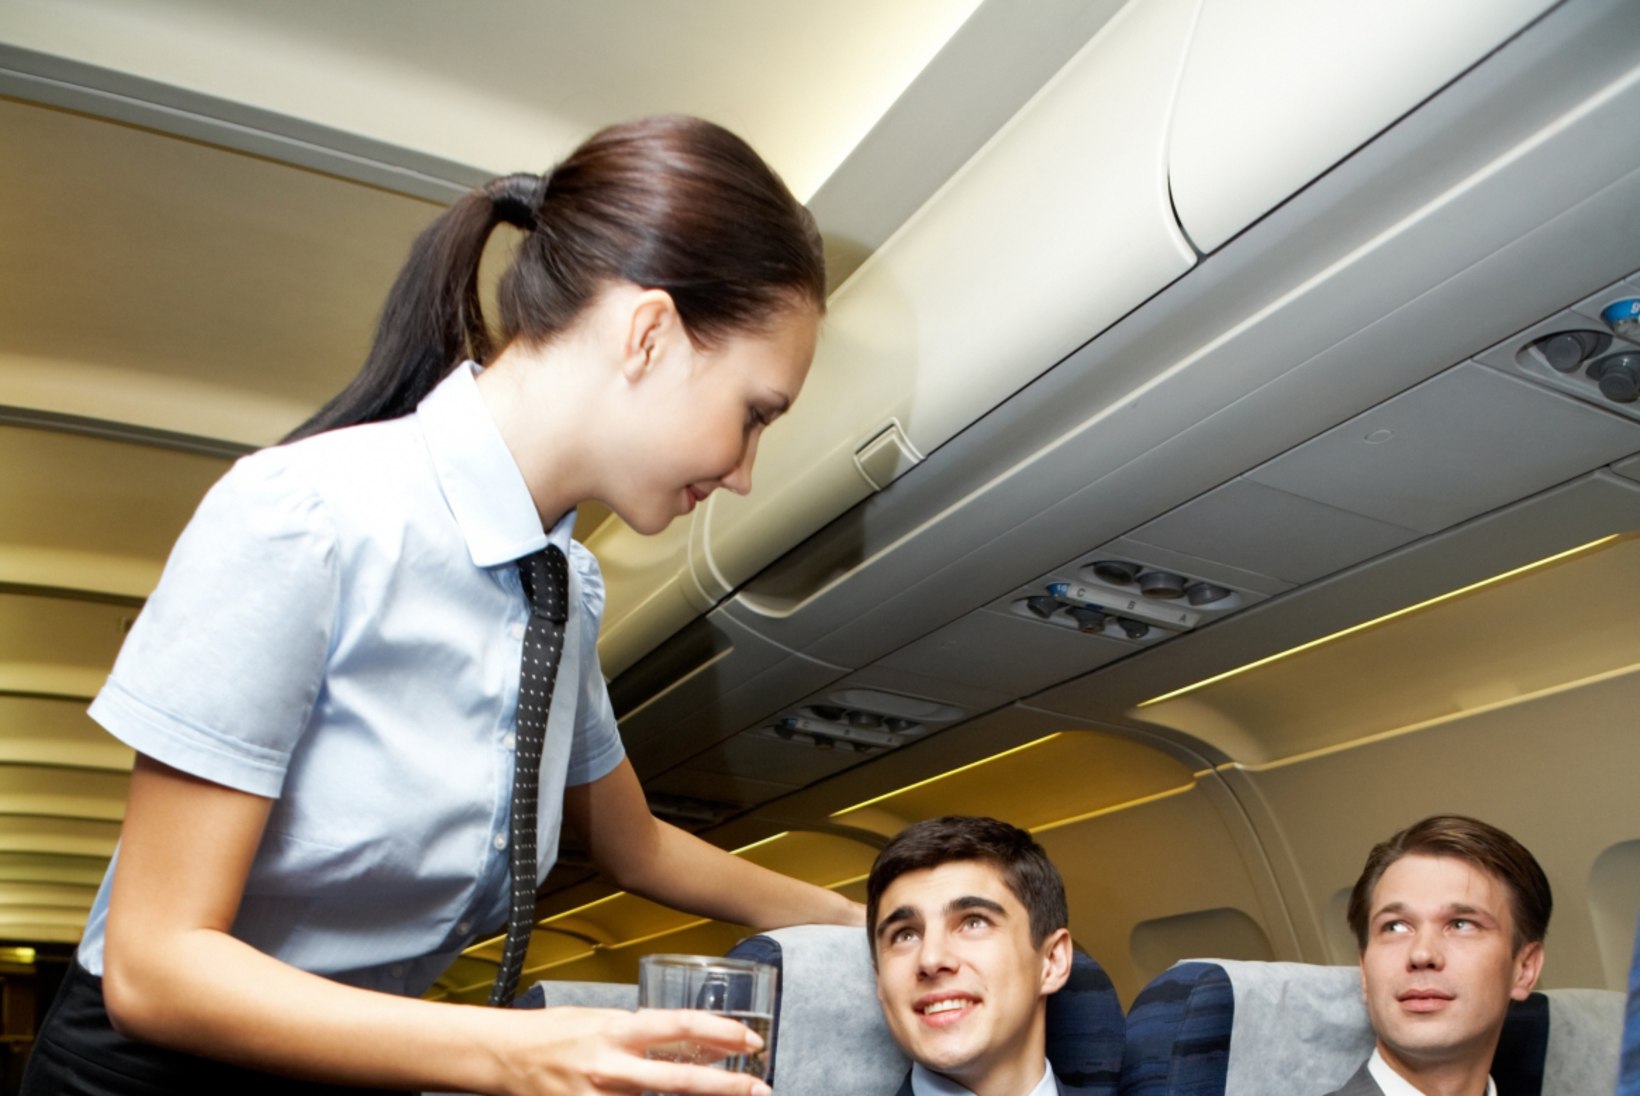 Kas stjuardess väärib jootraha?